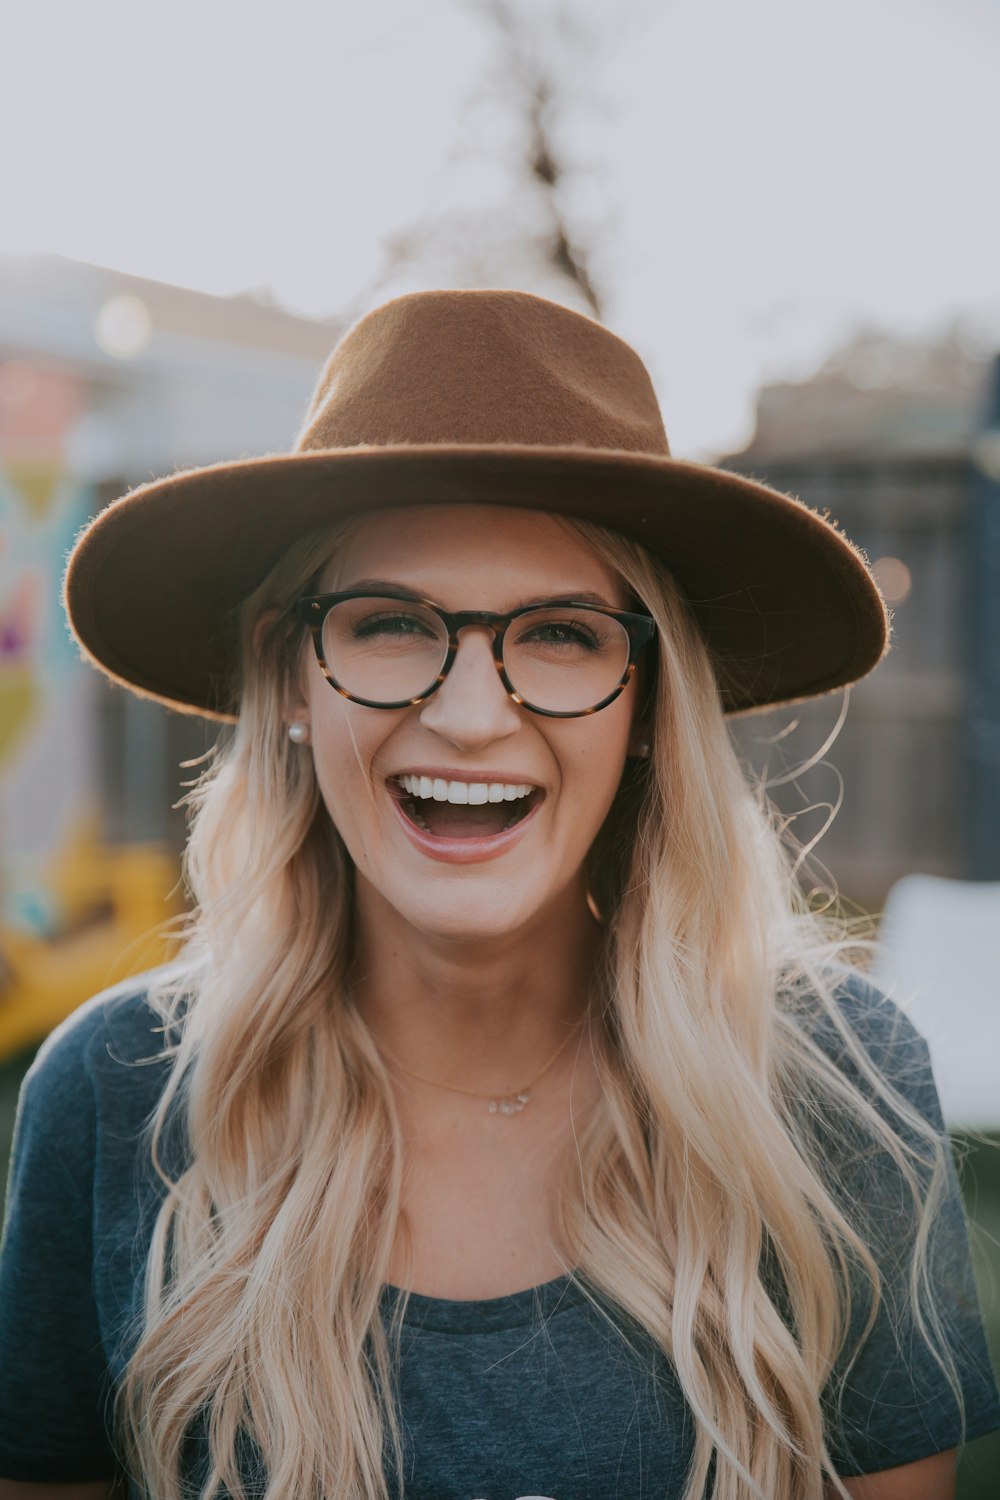 Photographie sélective de mise au point d’une femme souriante portant un chapeau brun